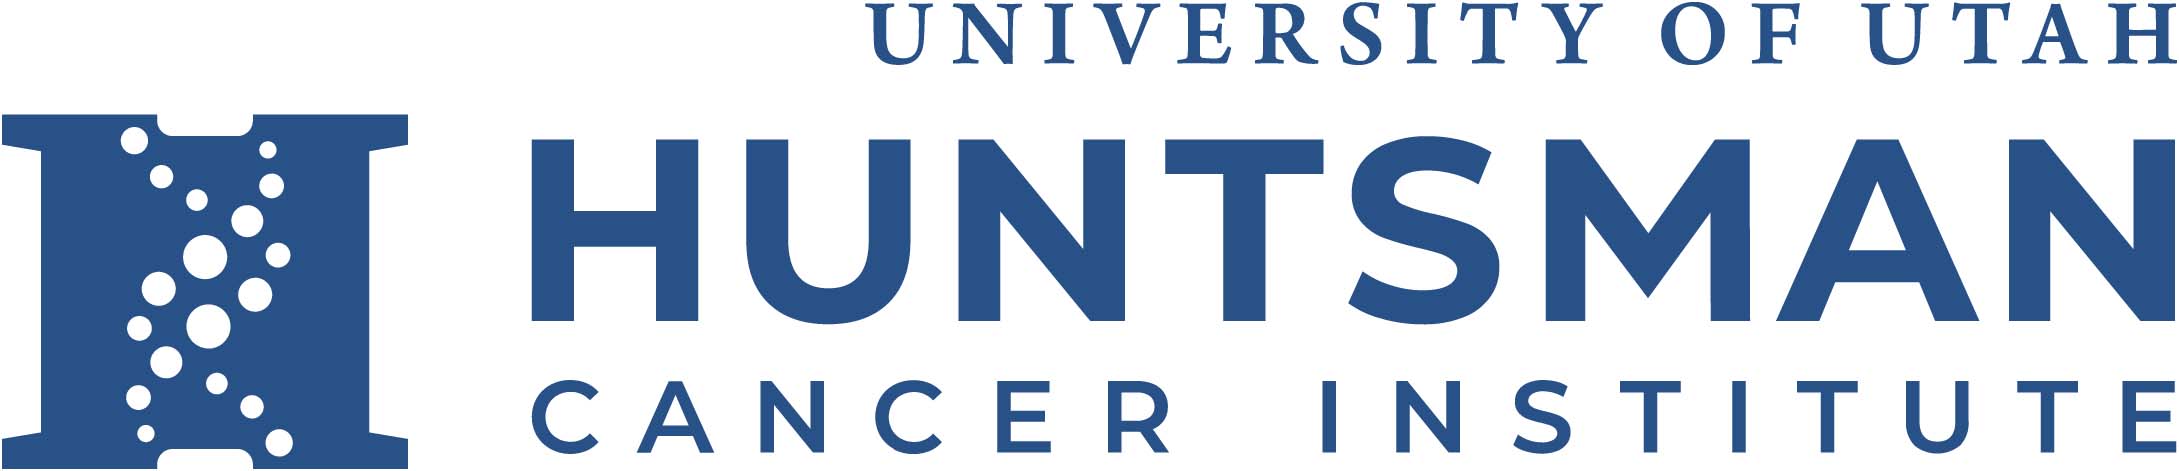 Huntsman Cancer Institute Logo, navy blue